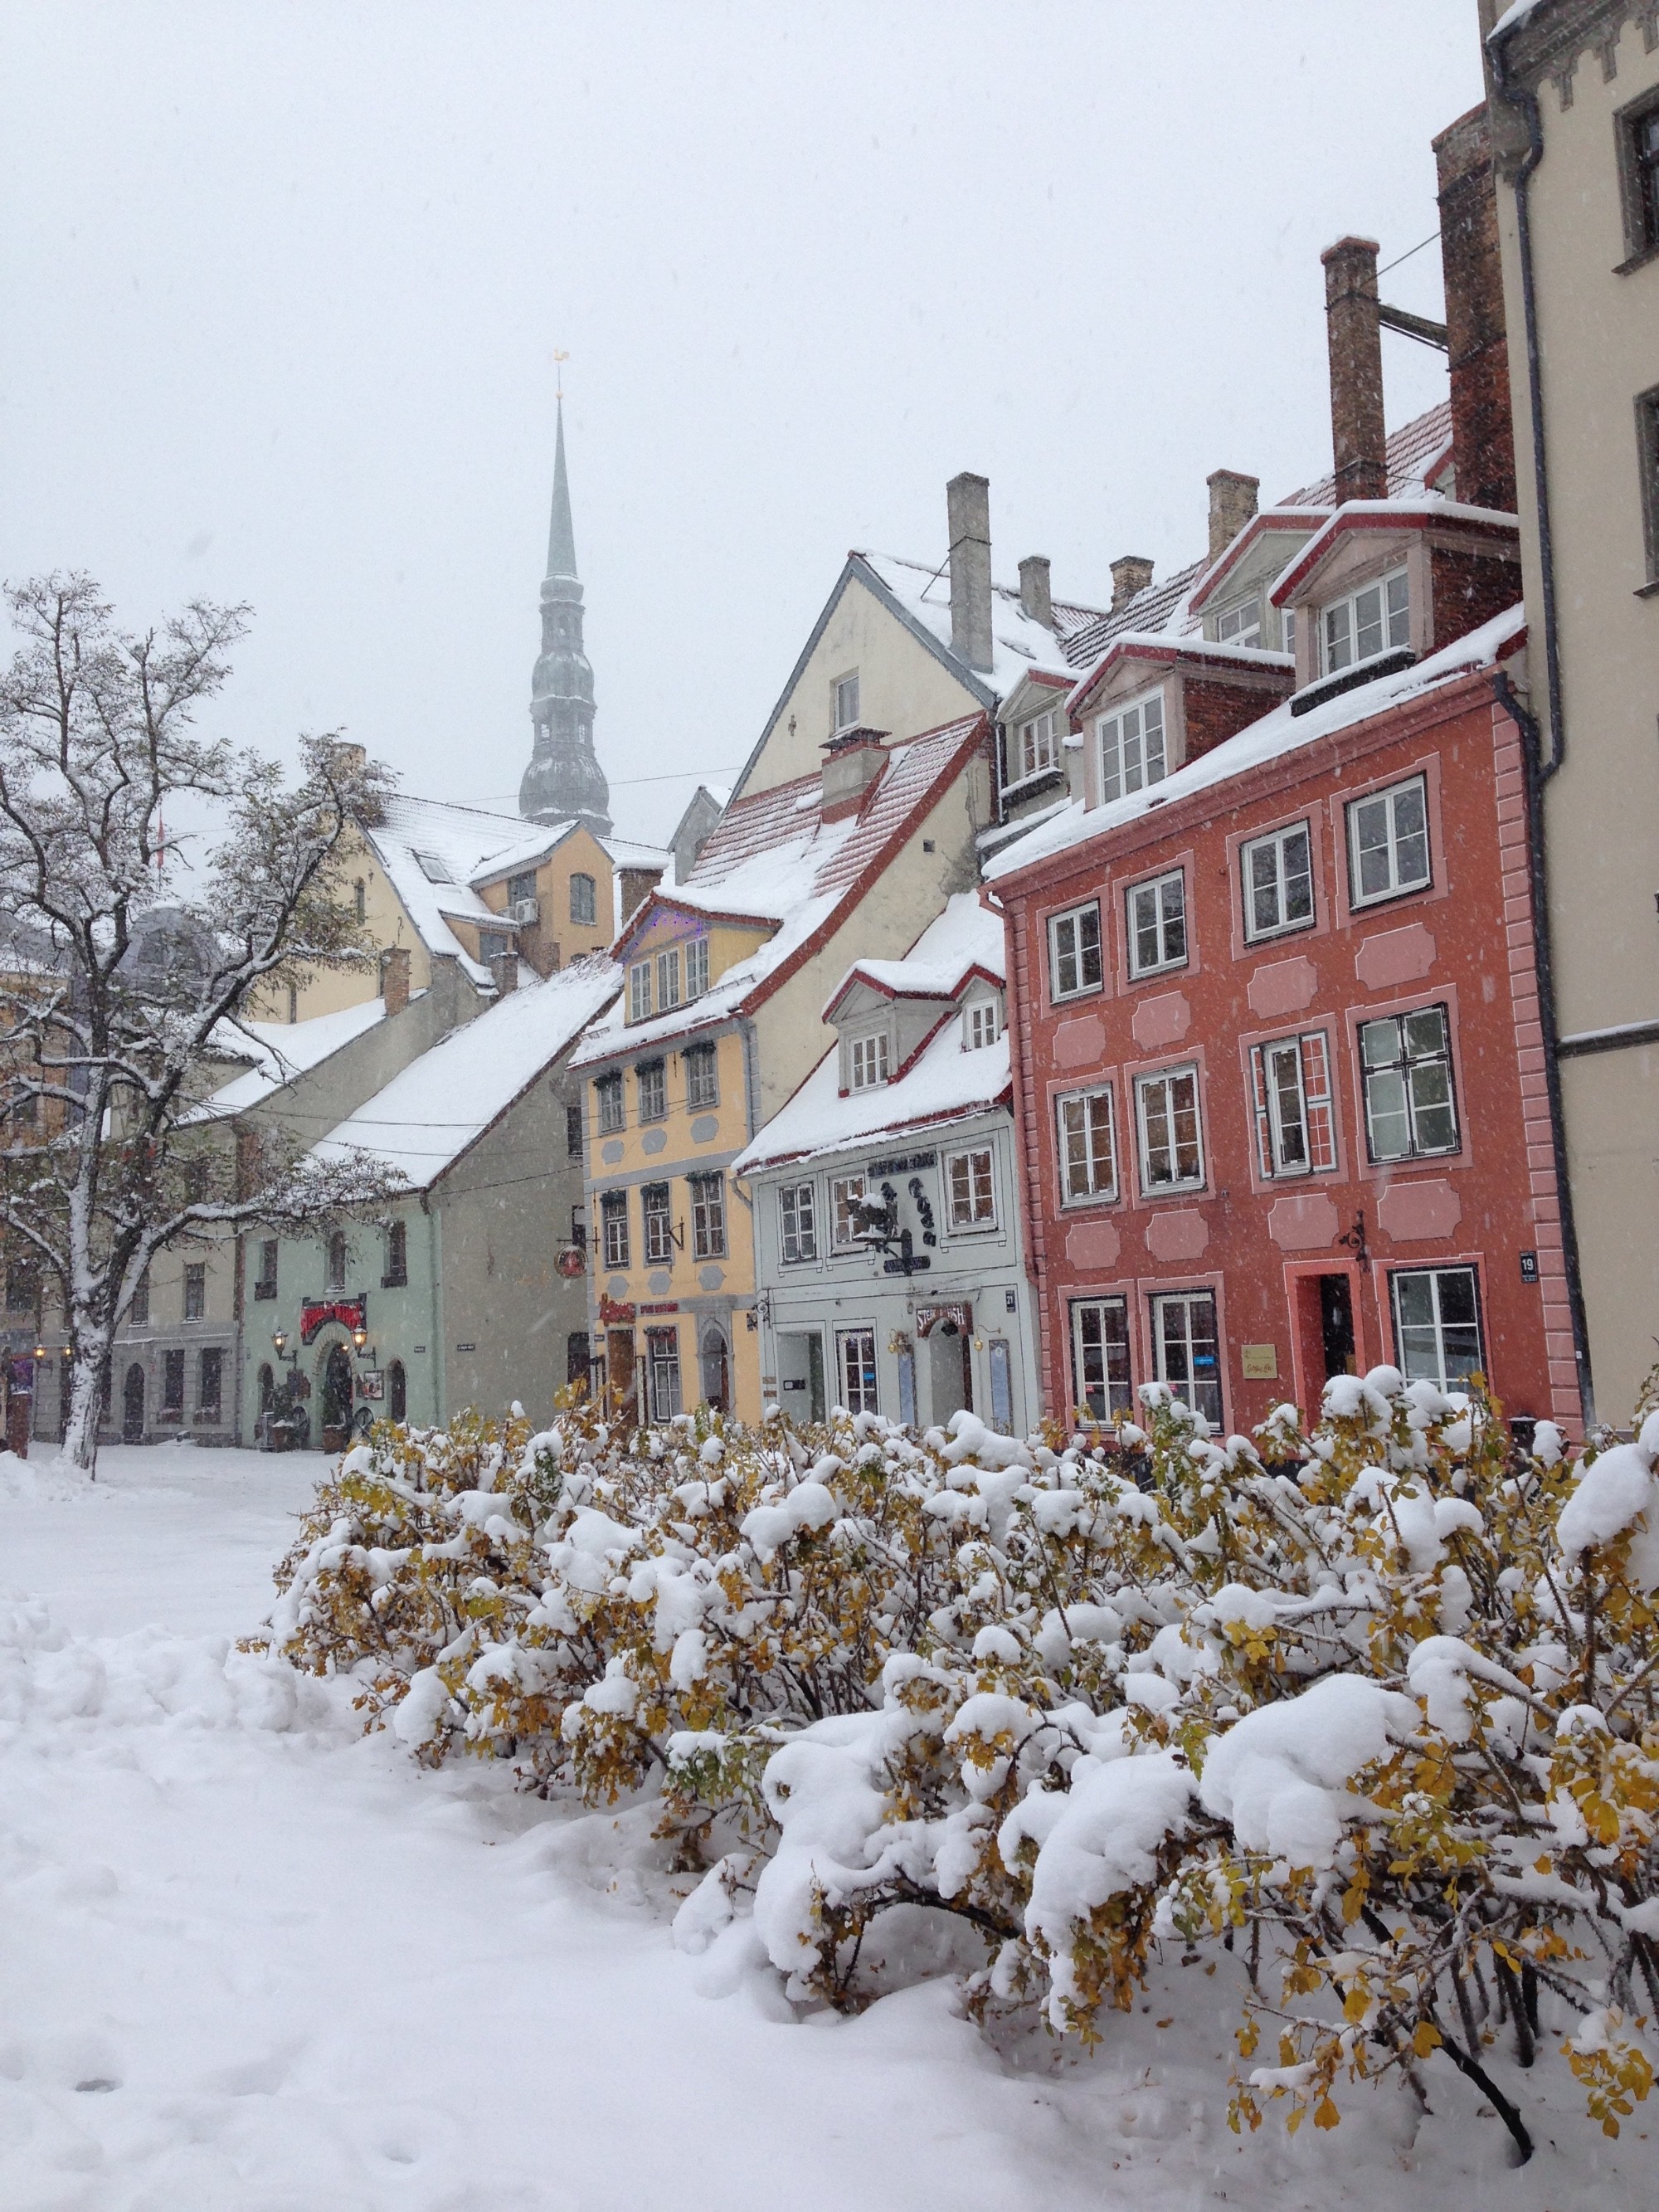 Повезло побывать в Латвии когда ее замело снегом, не каждый год такое бывает =)